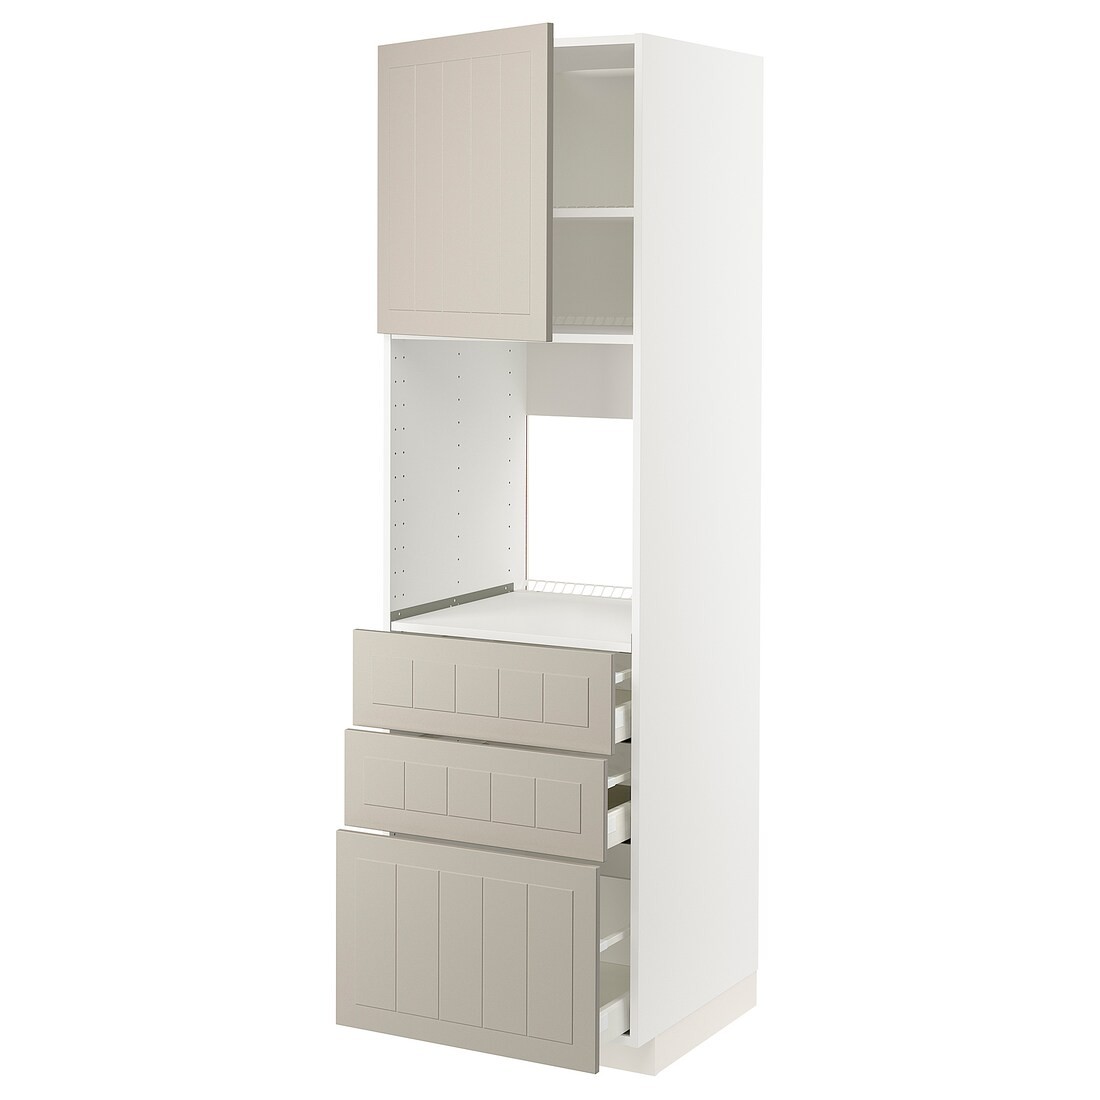 IKEA METOD МЕТОД / MAXIMERA МАКСІМЕРА Висока шафа для духовки, білий / Stensund бежевий, 60x60x200 см 29458791 294.587.91